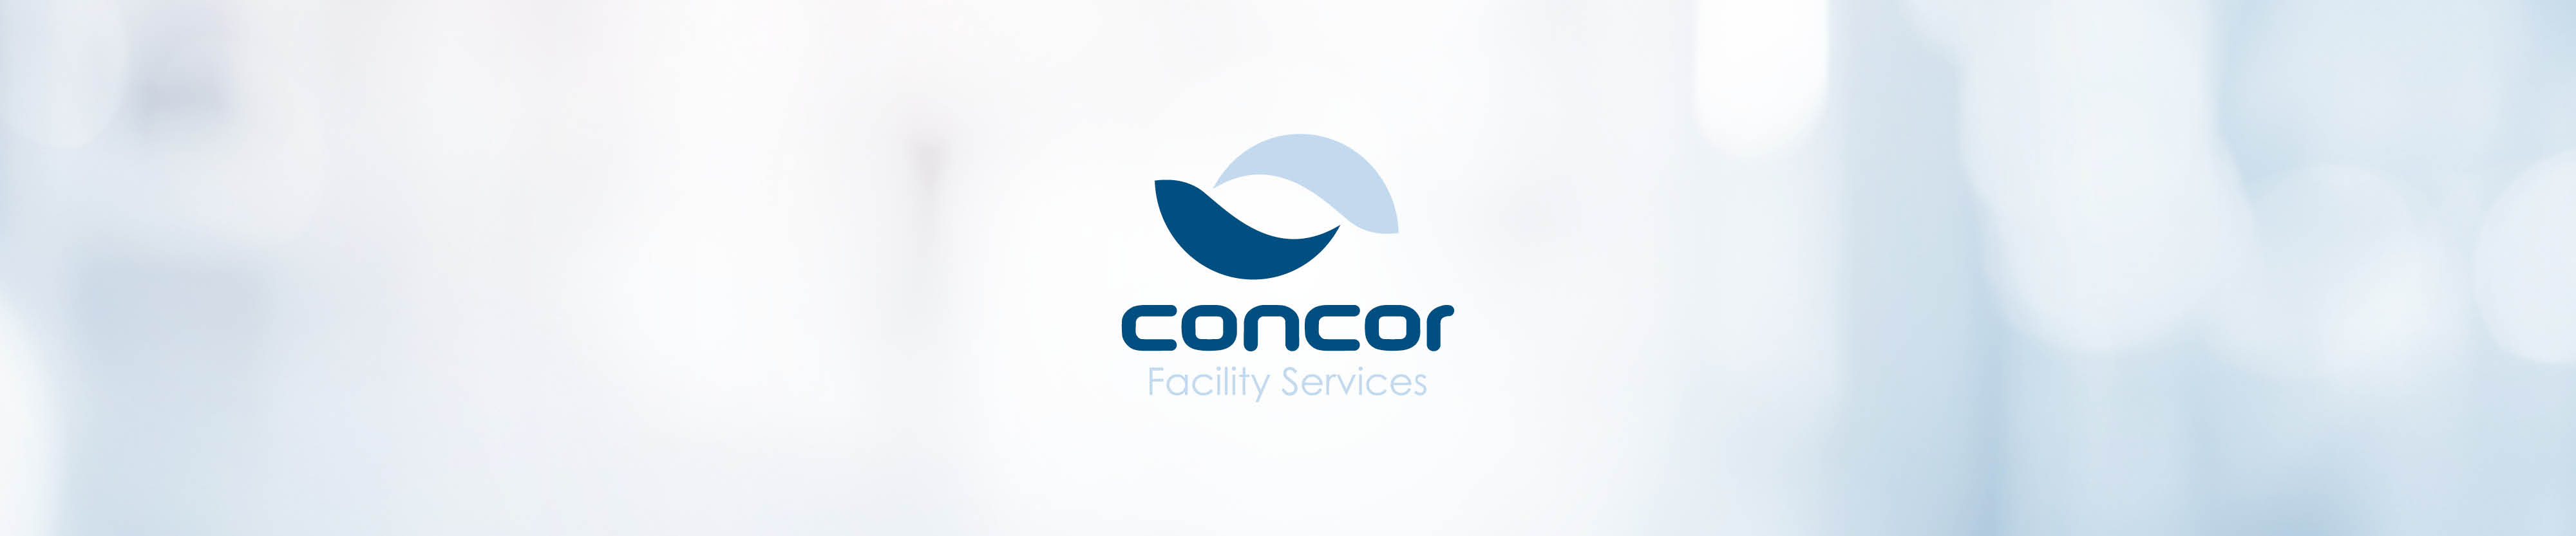 Concor Facility Services Contact Banner